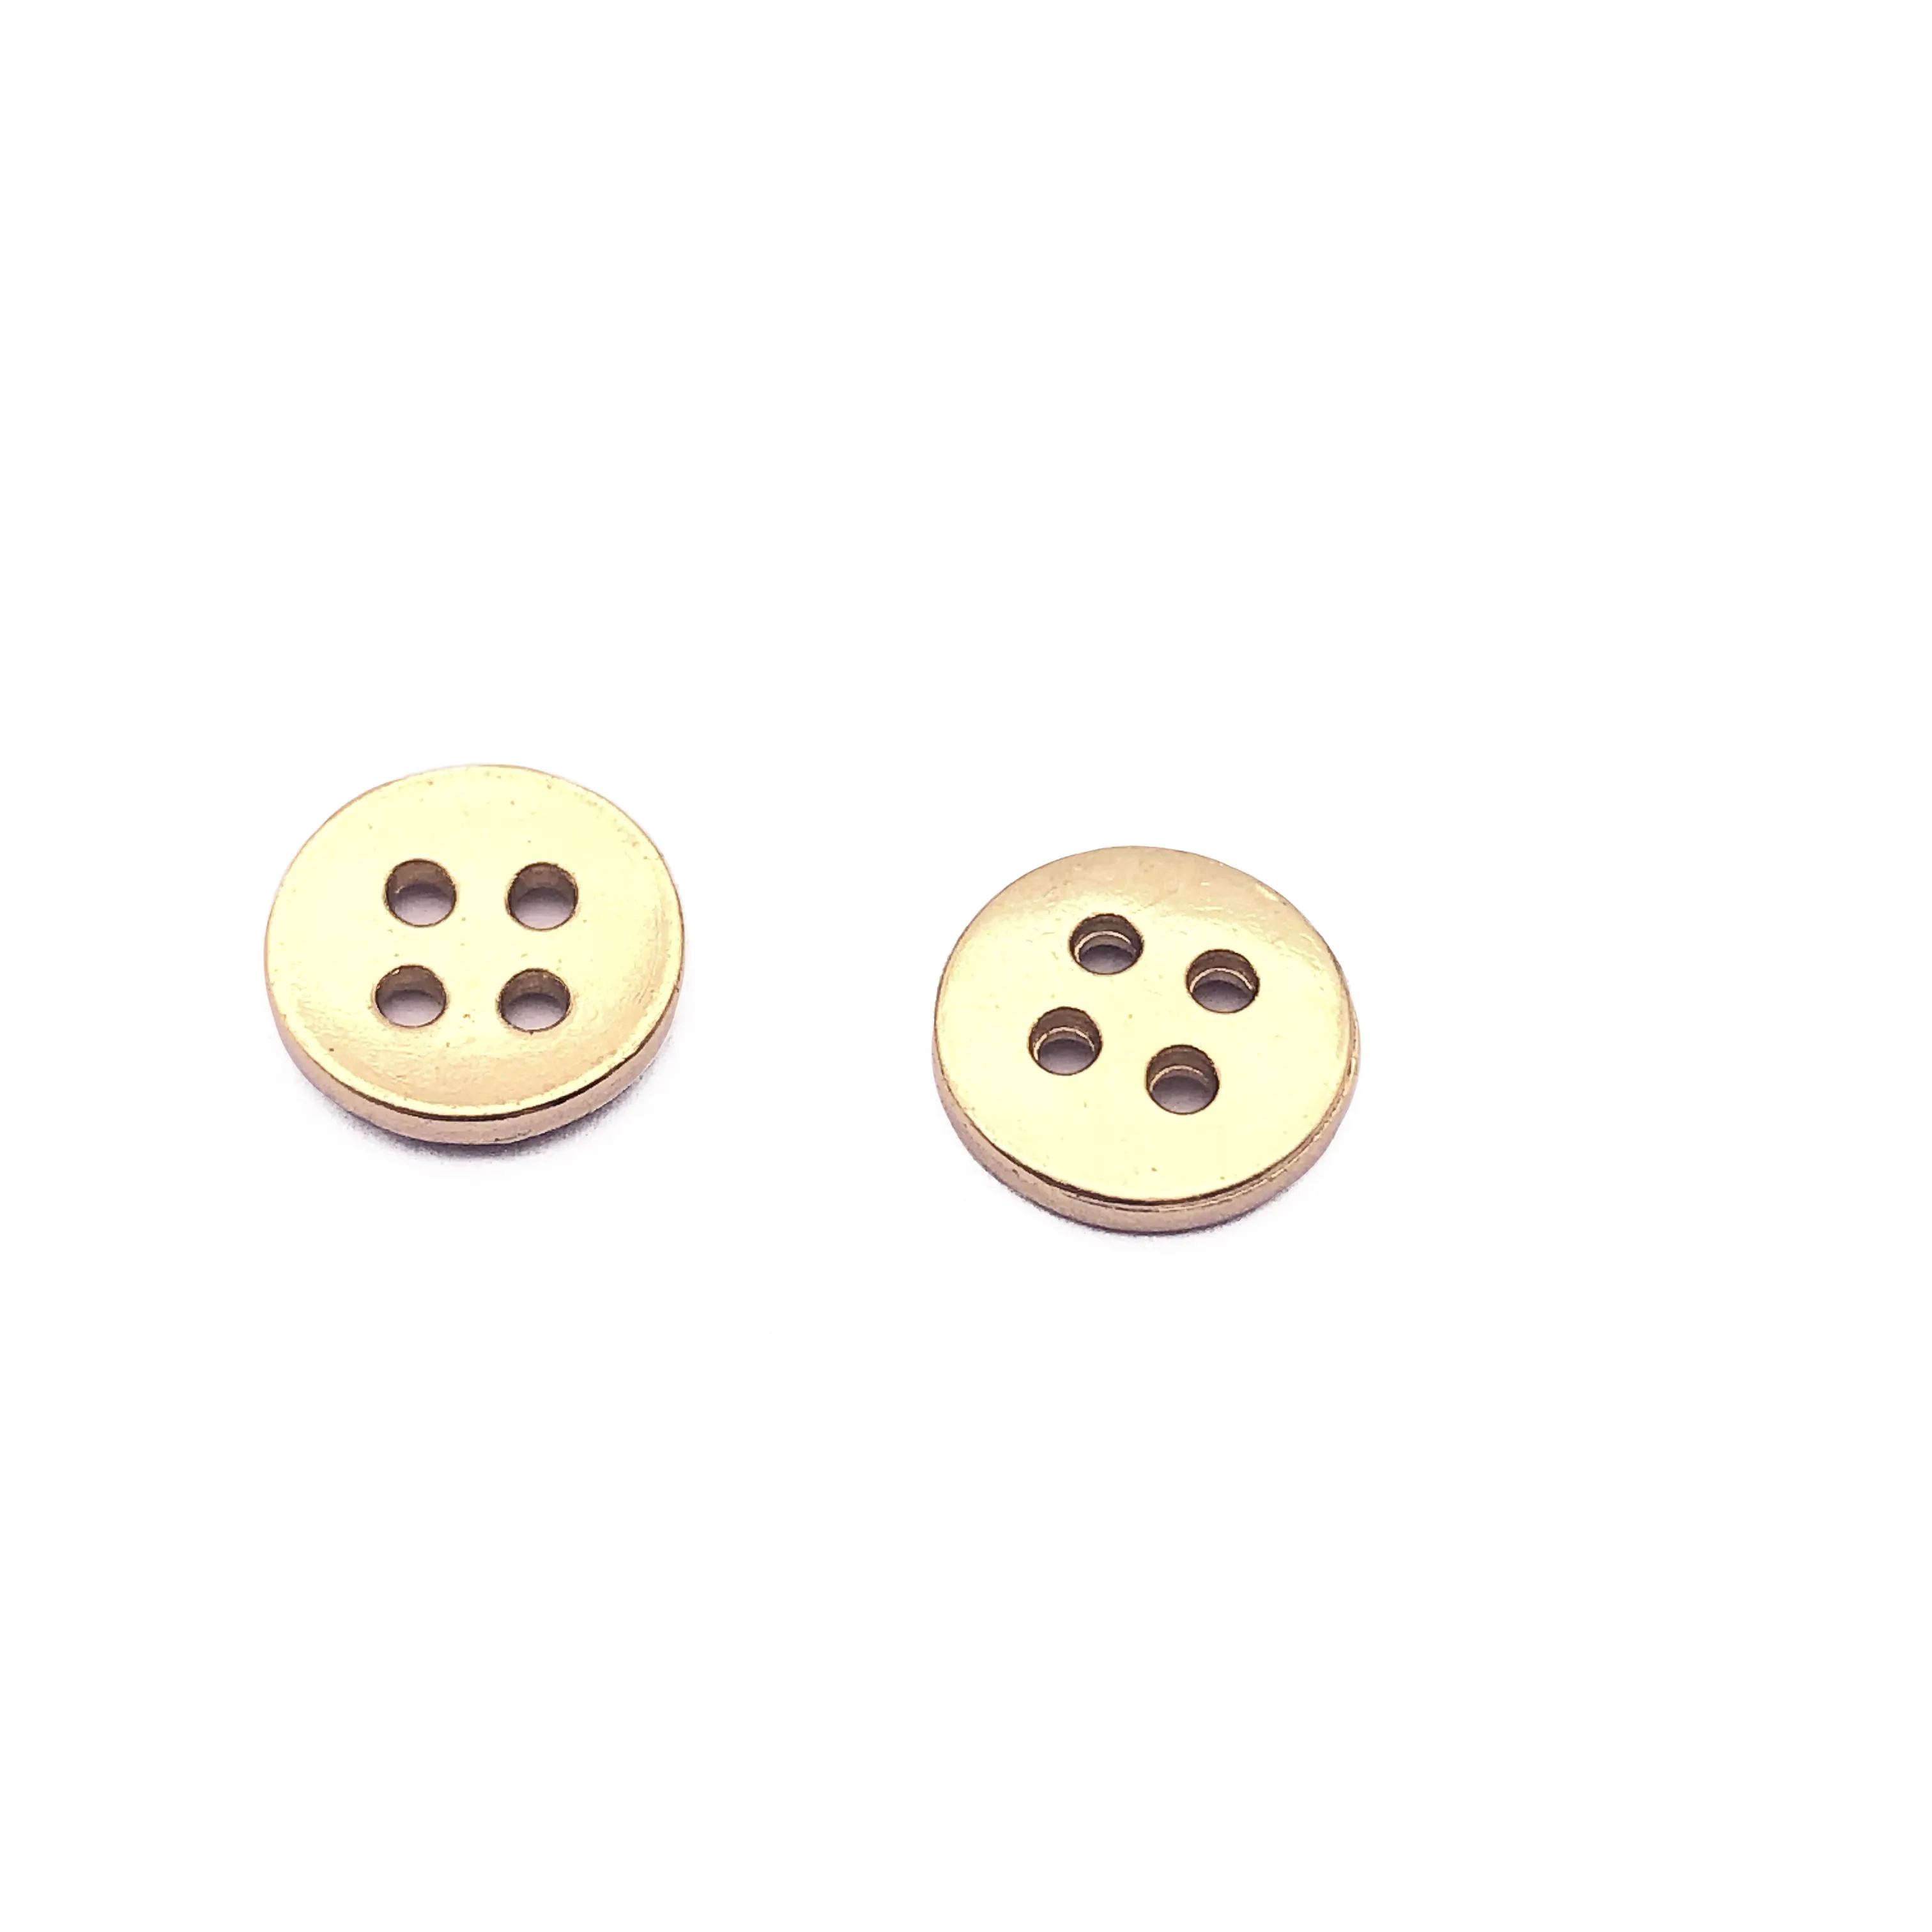 कस्टम बटन सिलाई 16एल 4 छेद वाले सुनहरे रंग के धातु शर्ट बटन 4 छेद वाले बटन